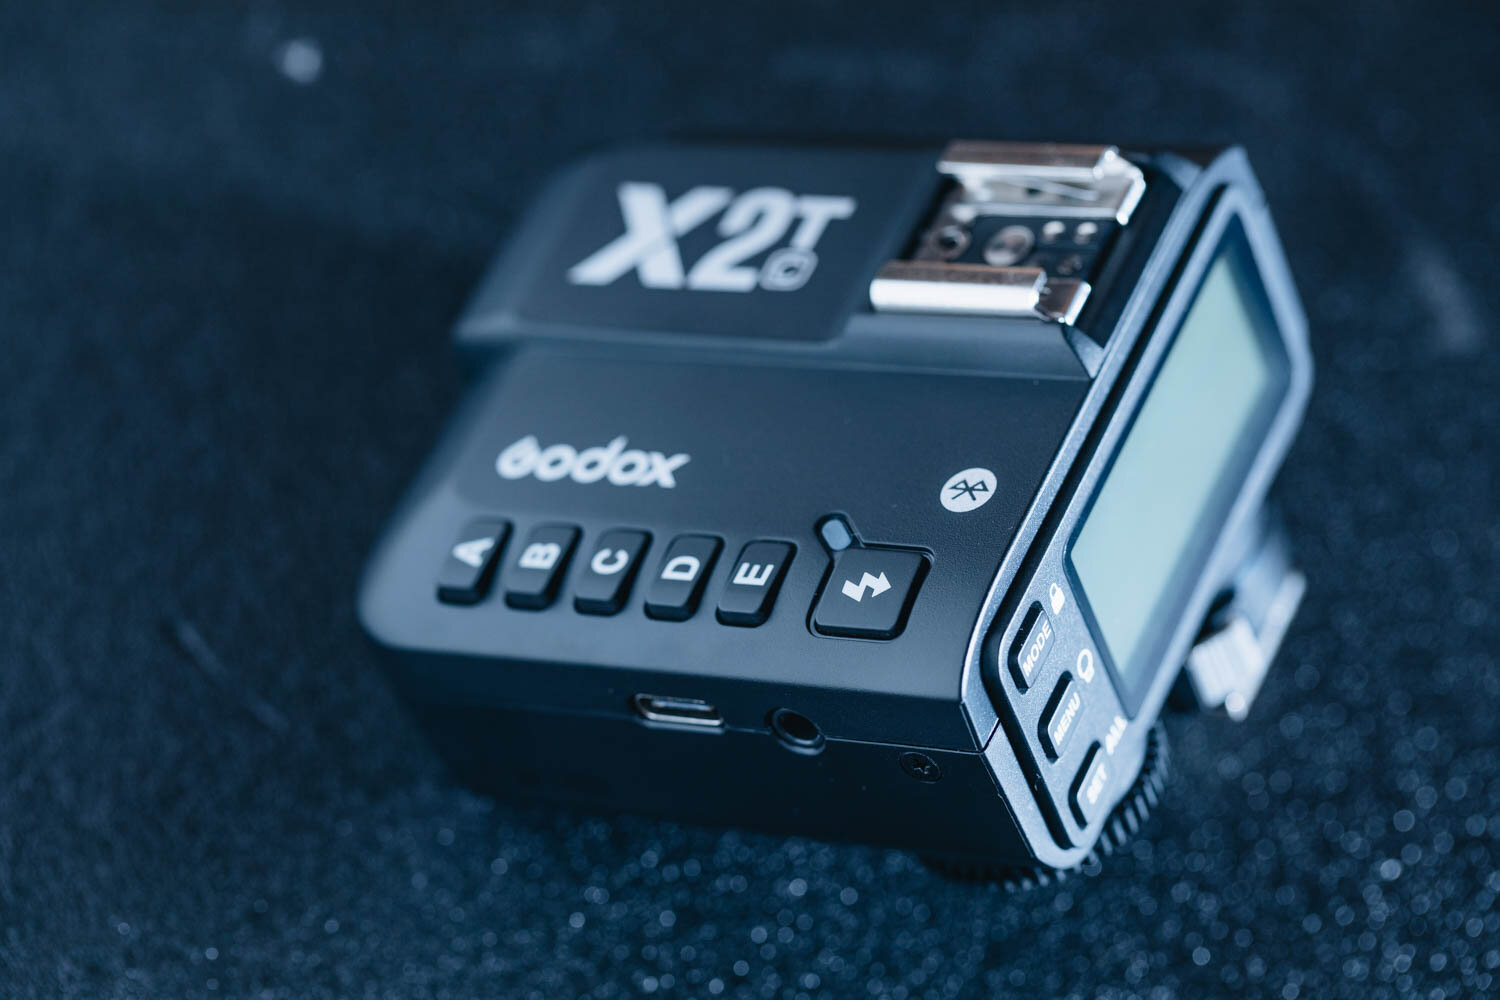 GODOX X2は、バックライトもついたりして操作がわかりやすくなった